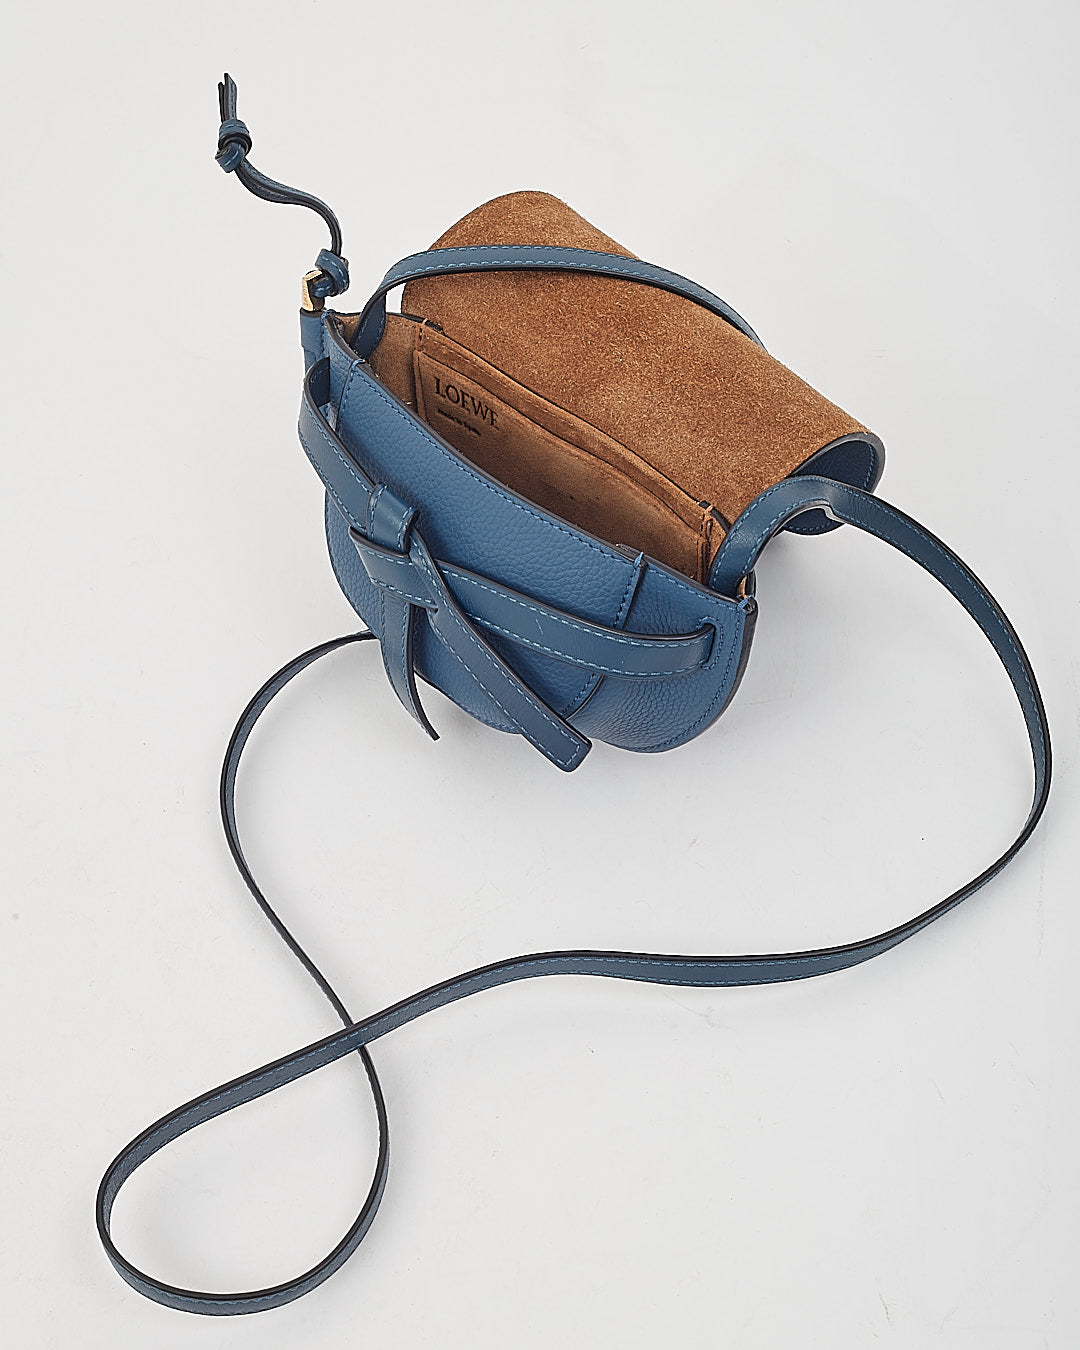 Loewe Blue Leather Mini Gate Crossbody Bag